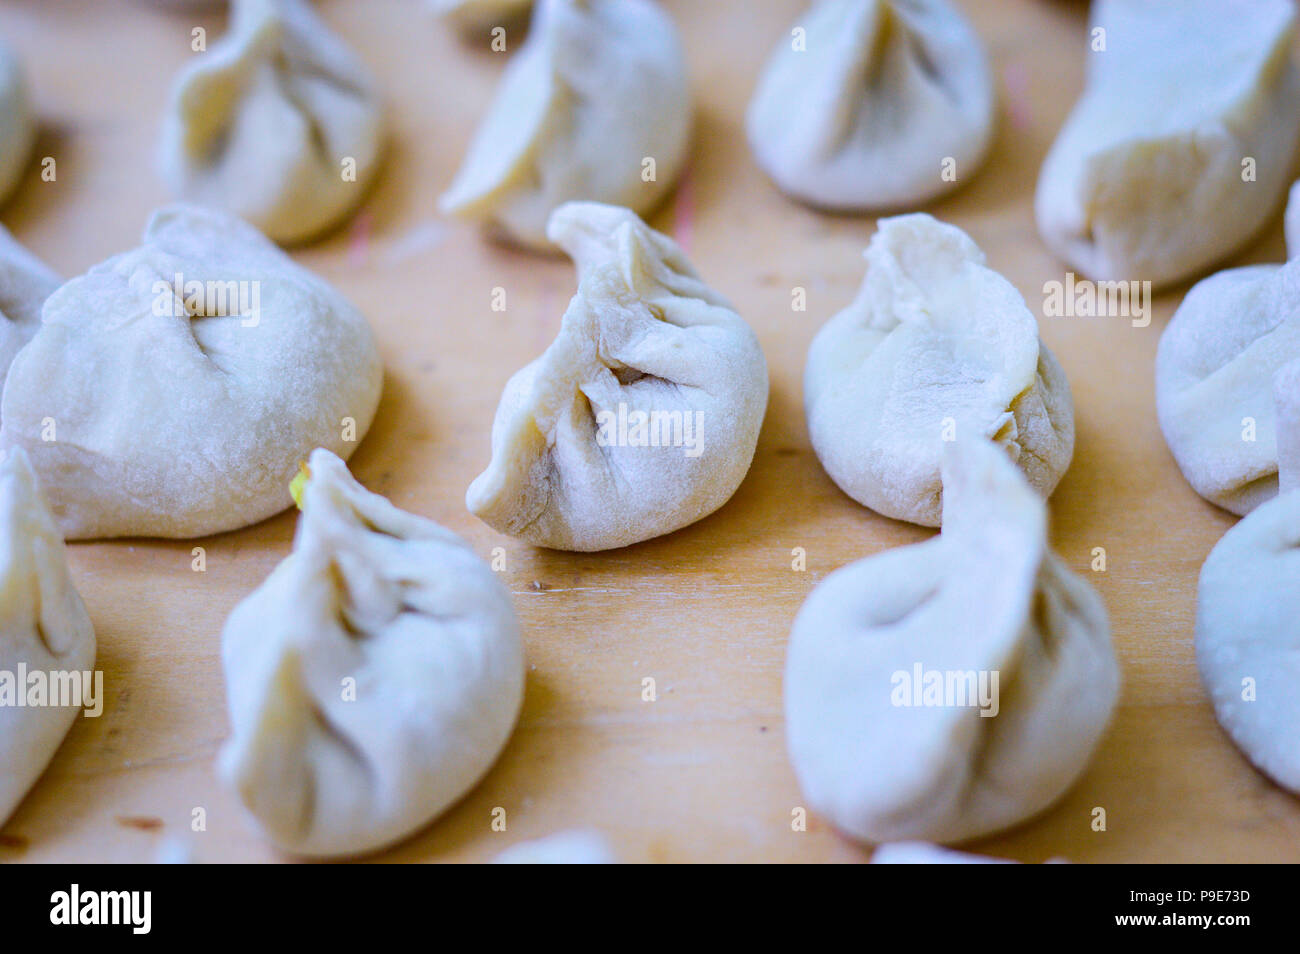 Close-up de boulettes chinoises, également appelé jiaozi en chinois. Banque D'Images